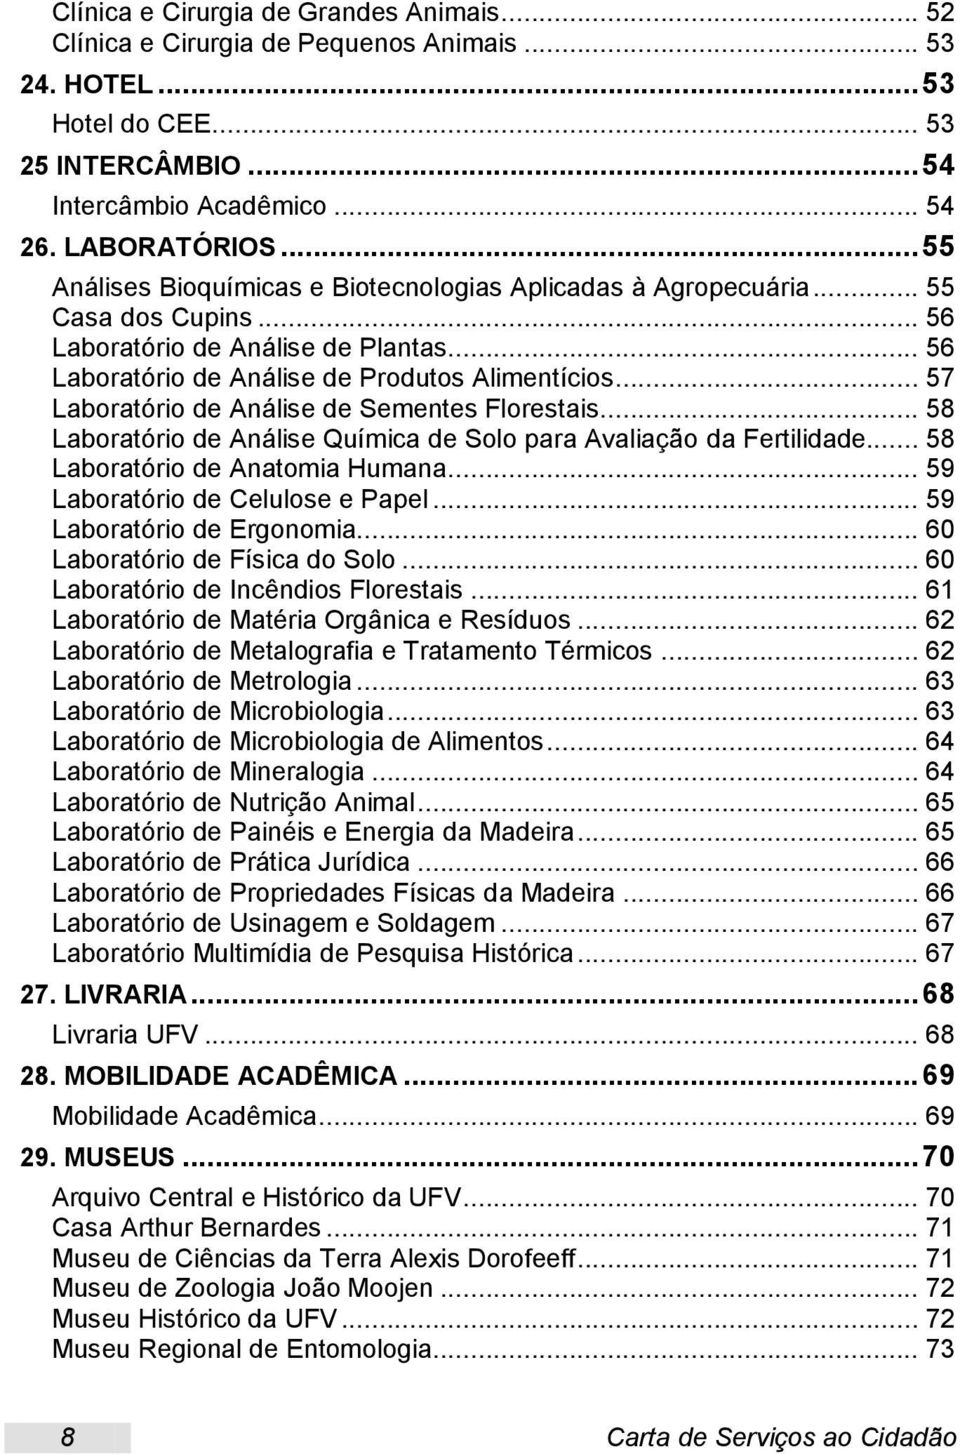 .. 57 Laboratório de Análise de Sementes Florestais... 58 Laboratório de Análise Química de Solo para Avaliação da Fertilidade... 58 Laboratório de Anatomia Humana... 59 Laboratório de Celulose e Papel.